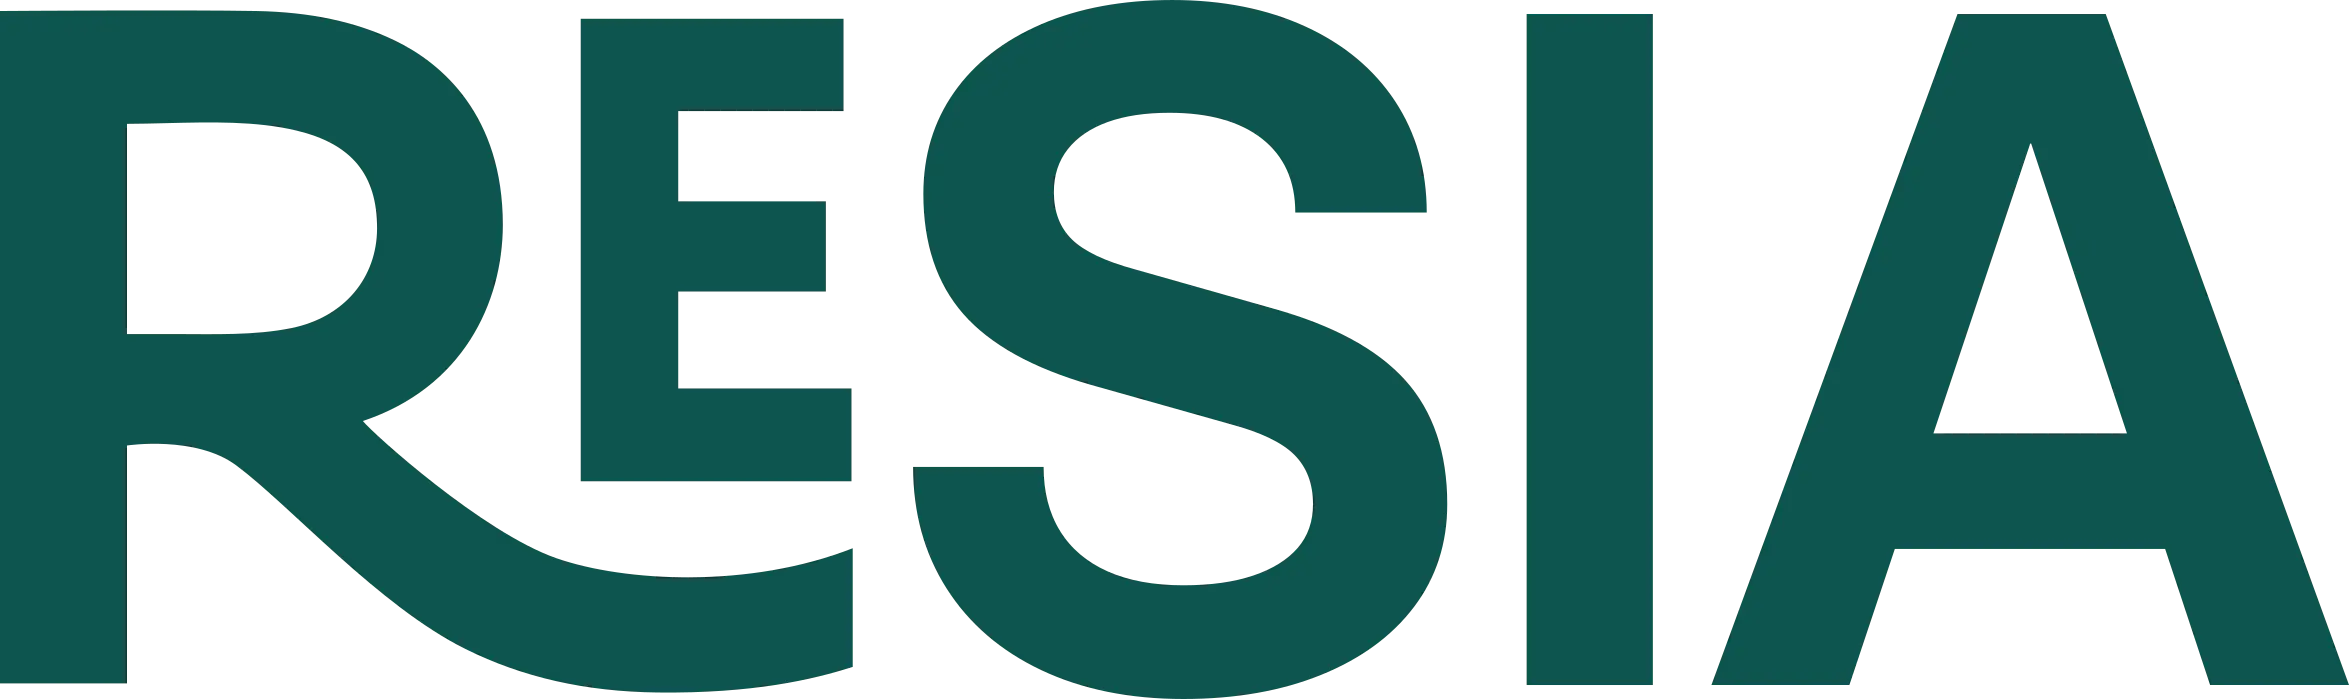 Logo Resia